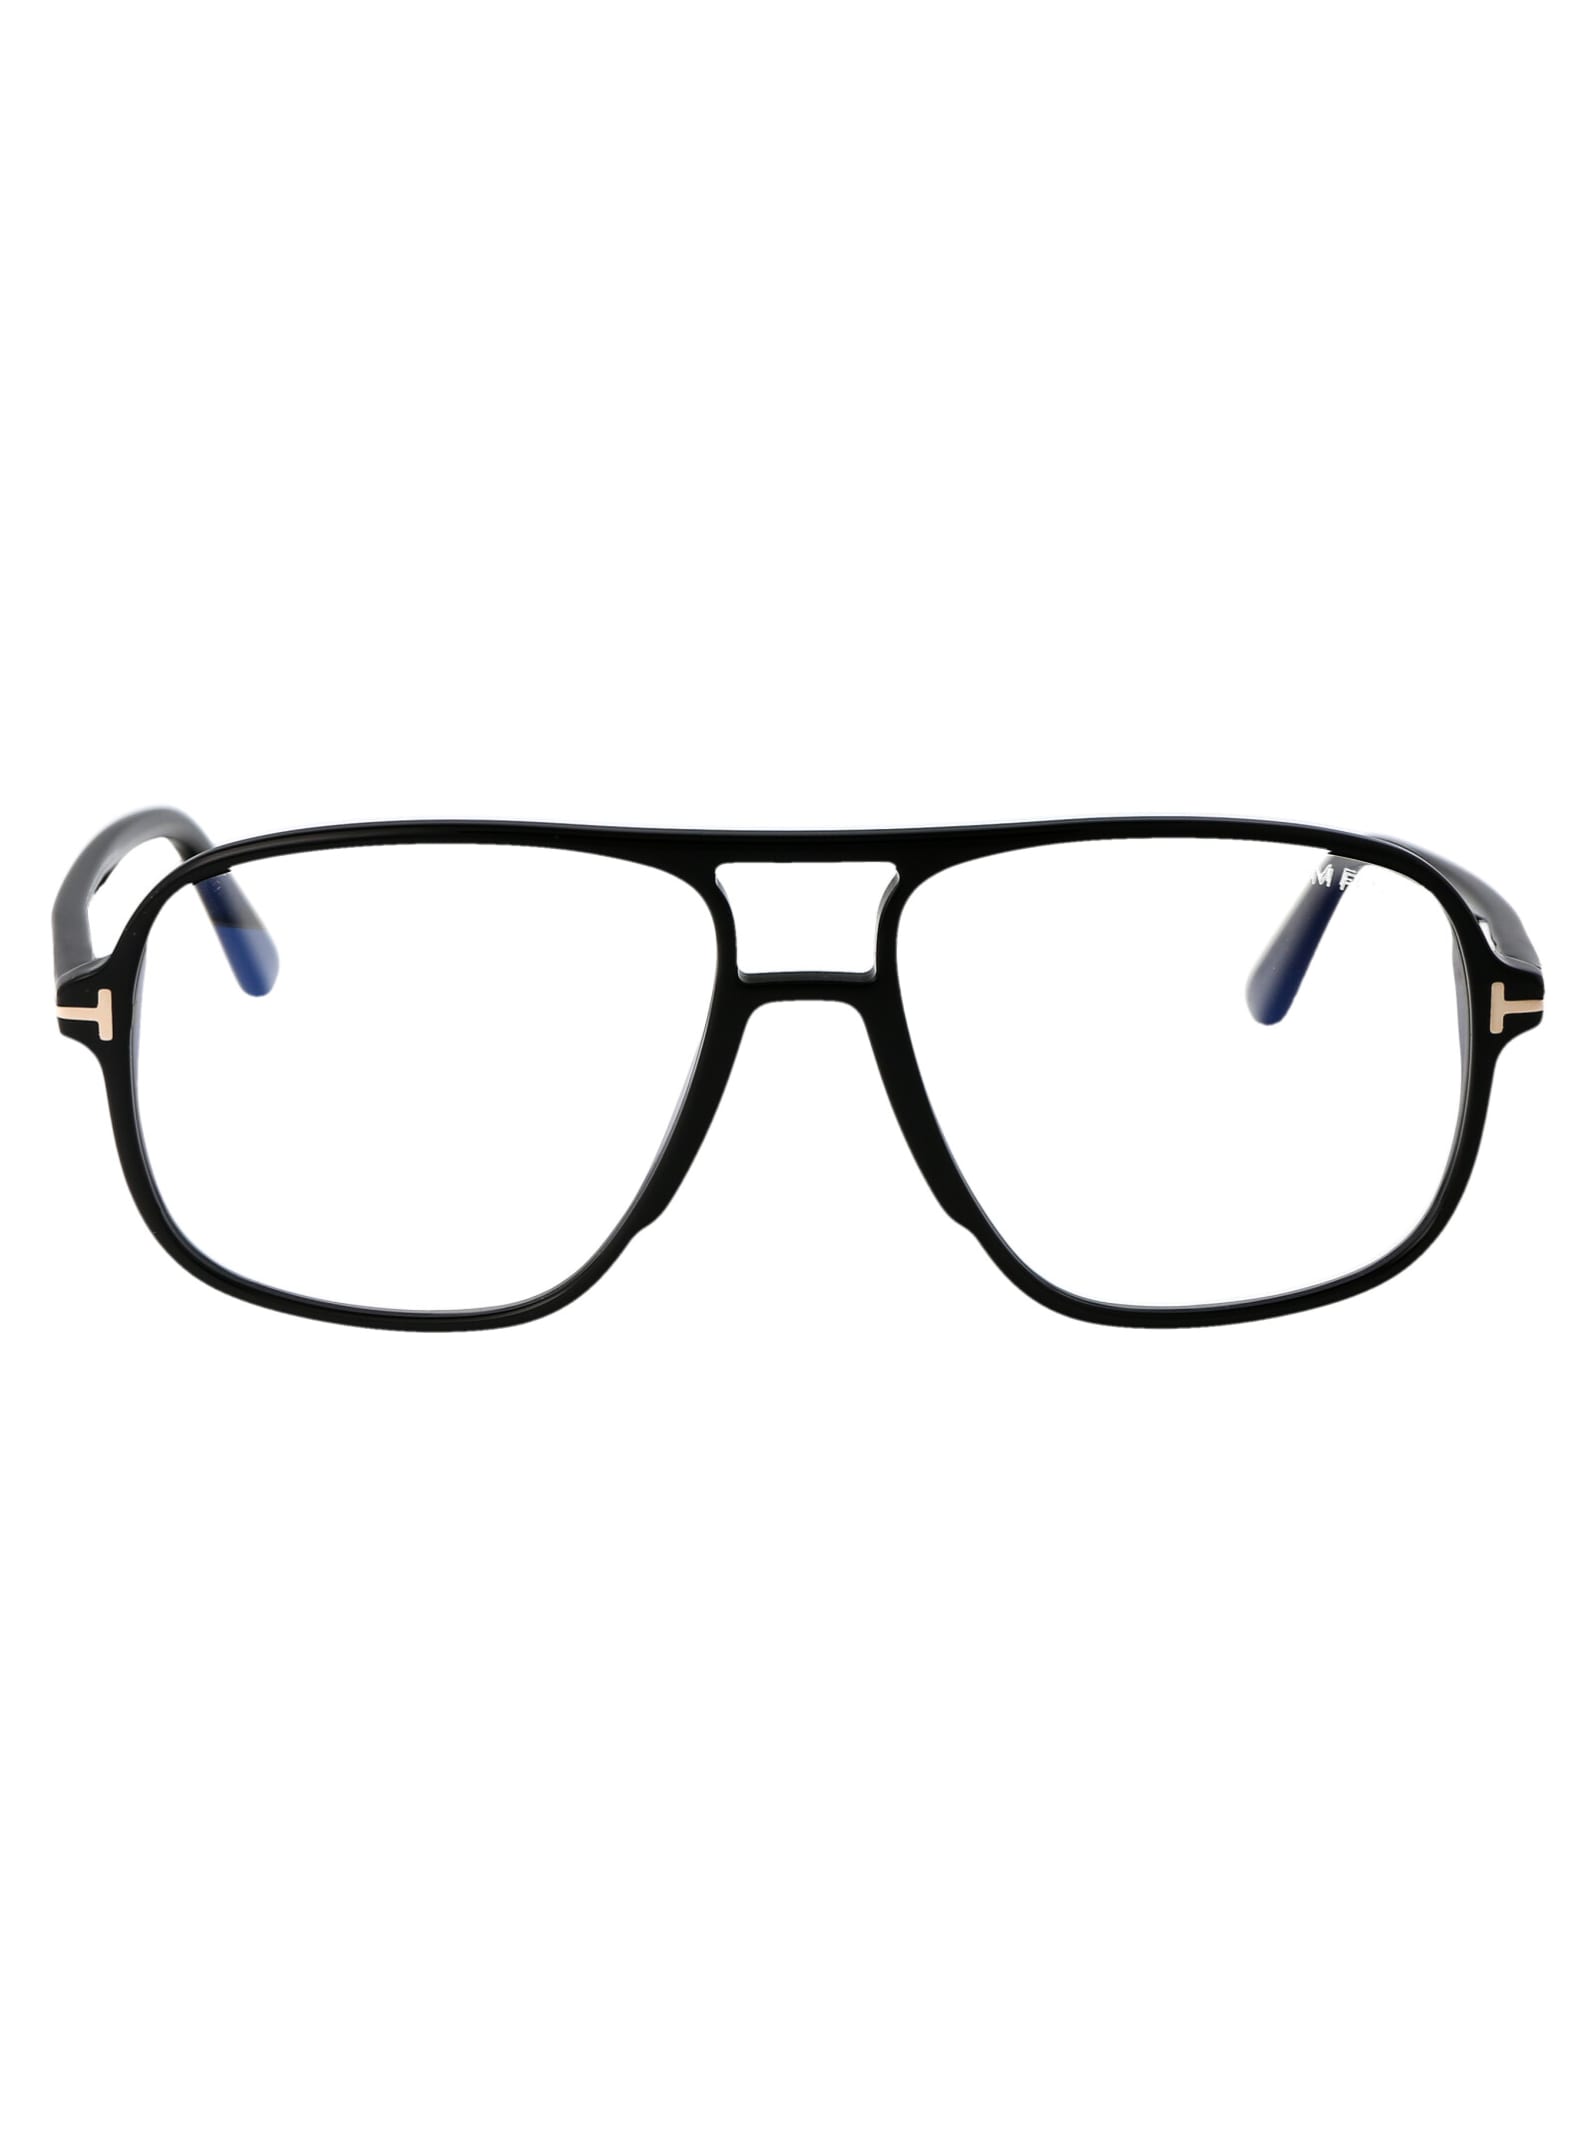 Ft5737-b Glasses